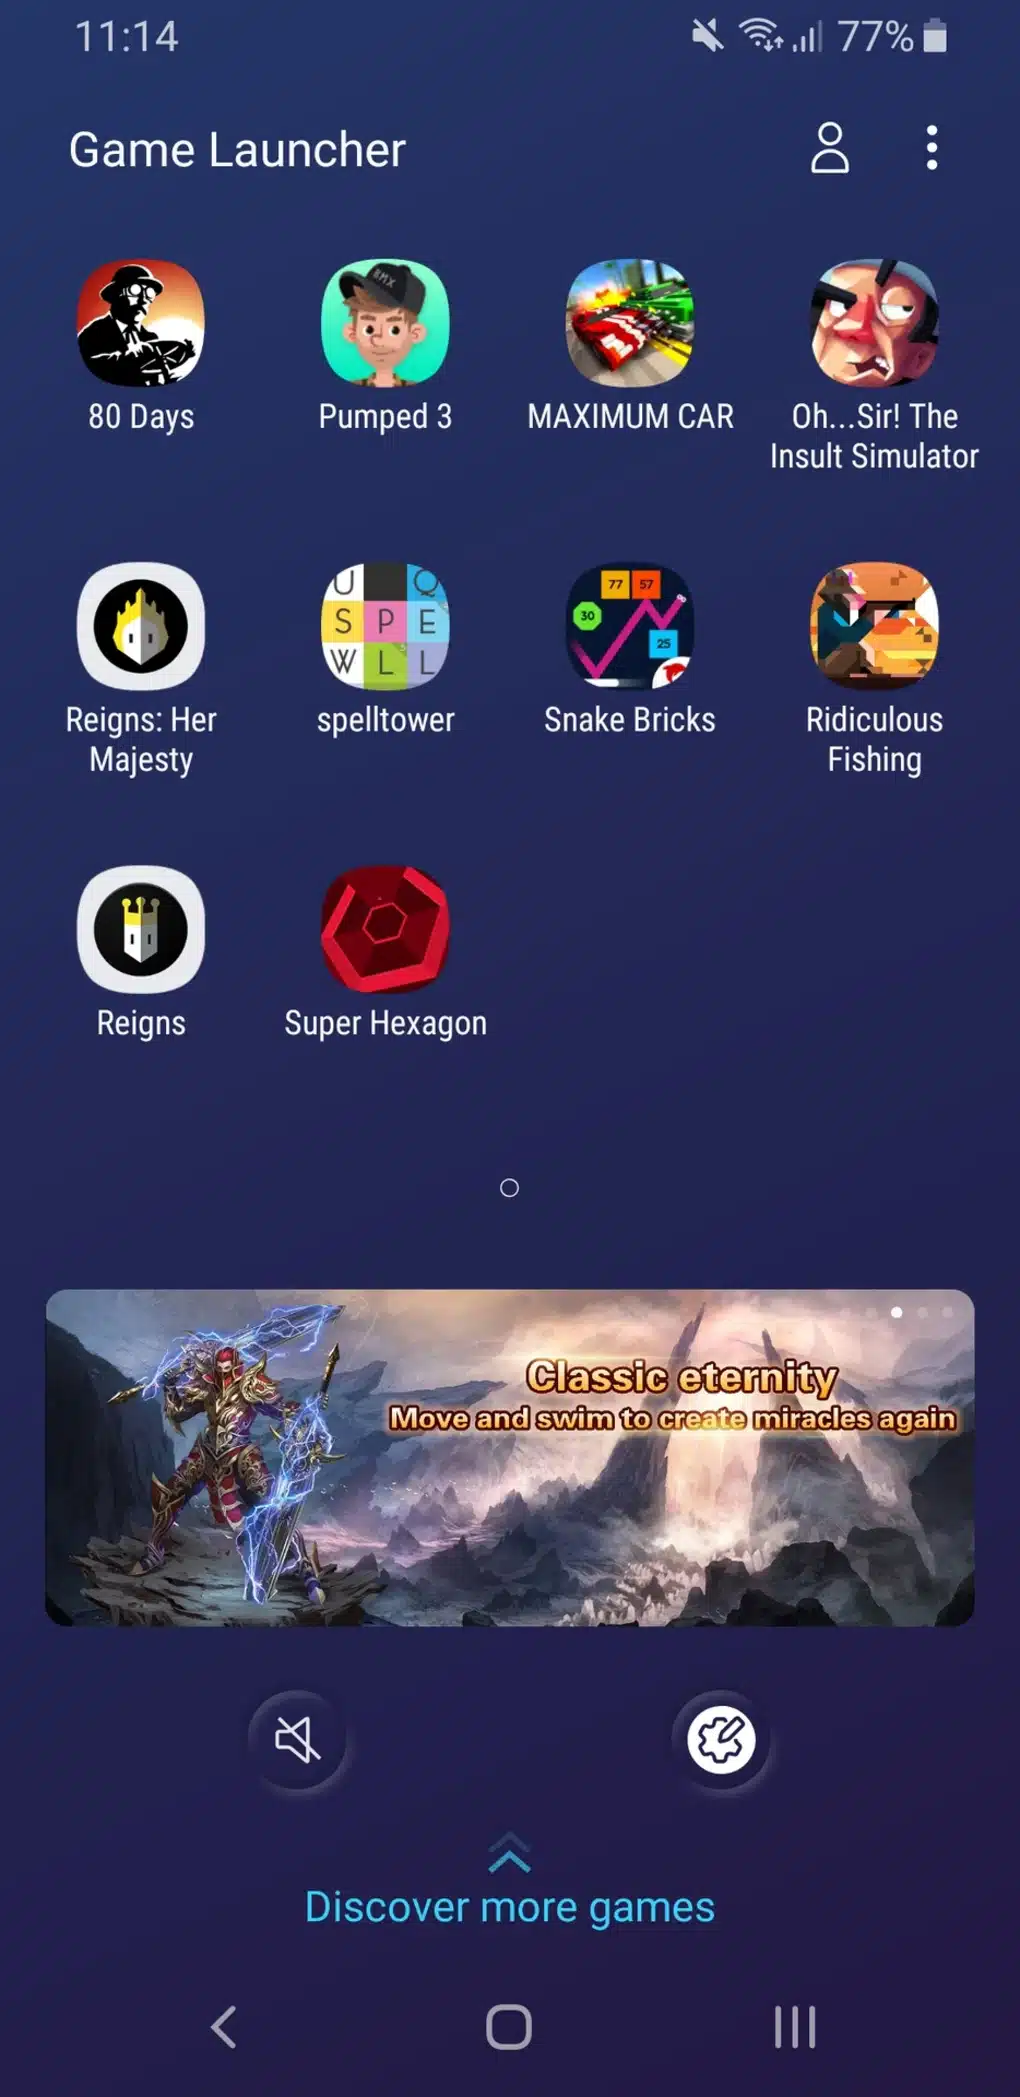 Mở ứng dụng Game Launcher và chọn game mà bạn muốn chơi